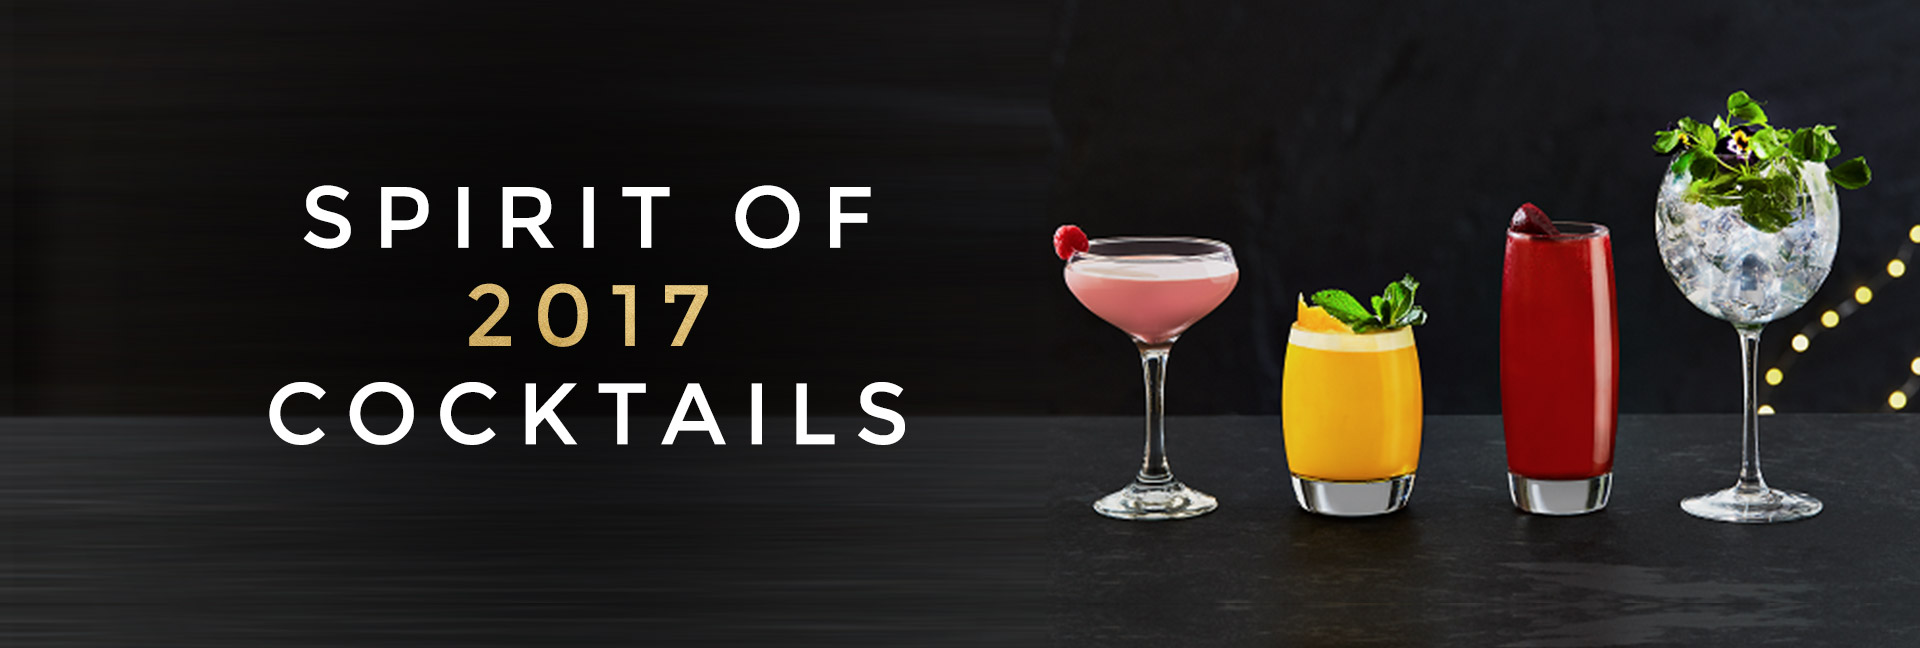 Spirit of 2017 cocktails at All Bar One Regent Street